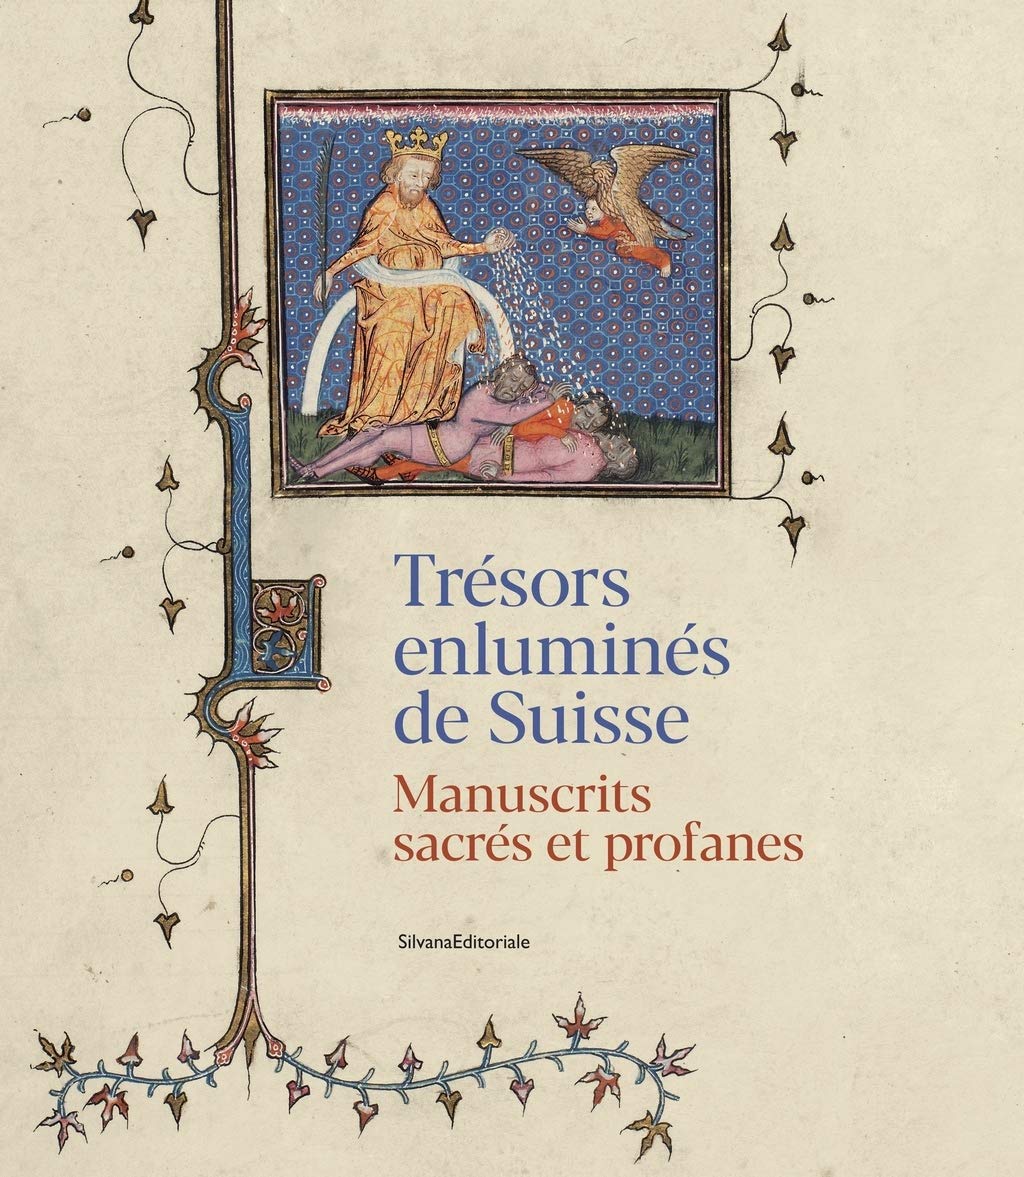 Trésors enluminés de Suisse. Manuscrits sacrés et profanes, 2021, 391 p.